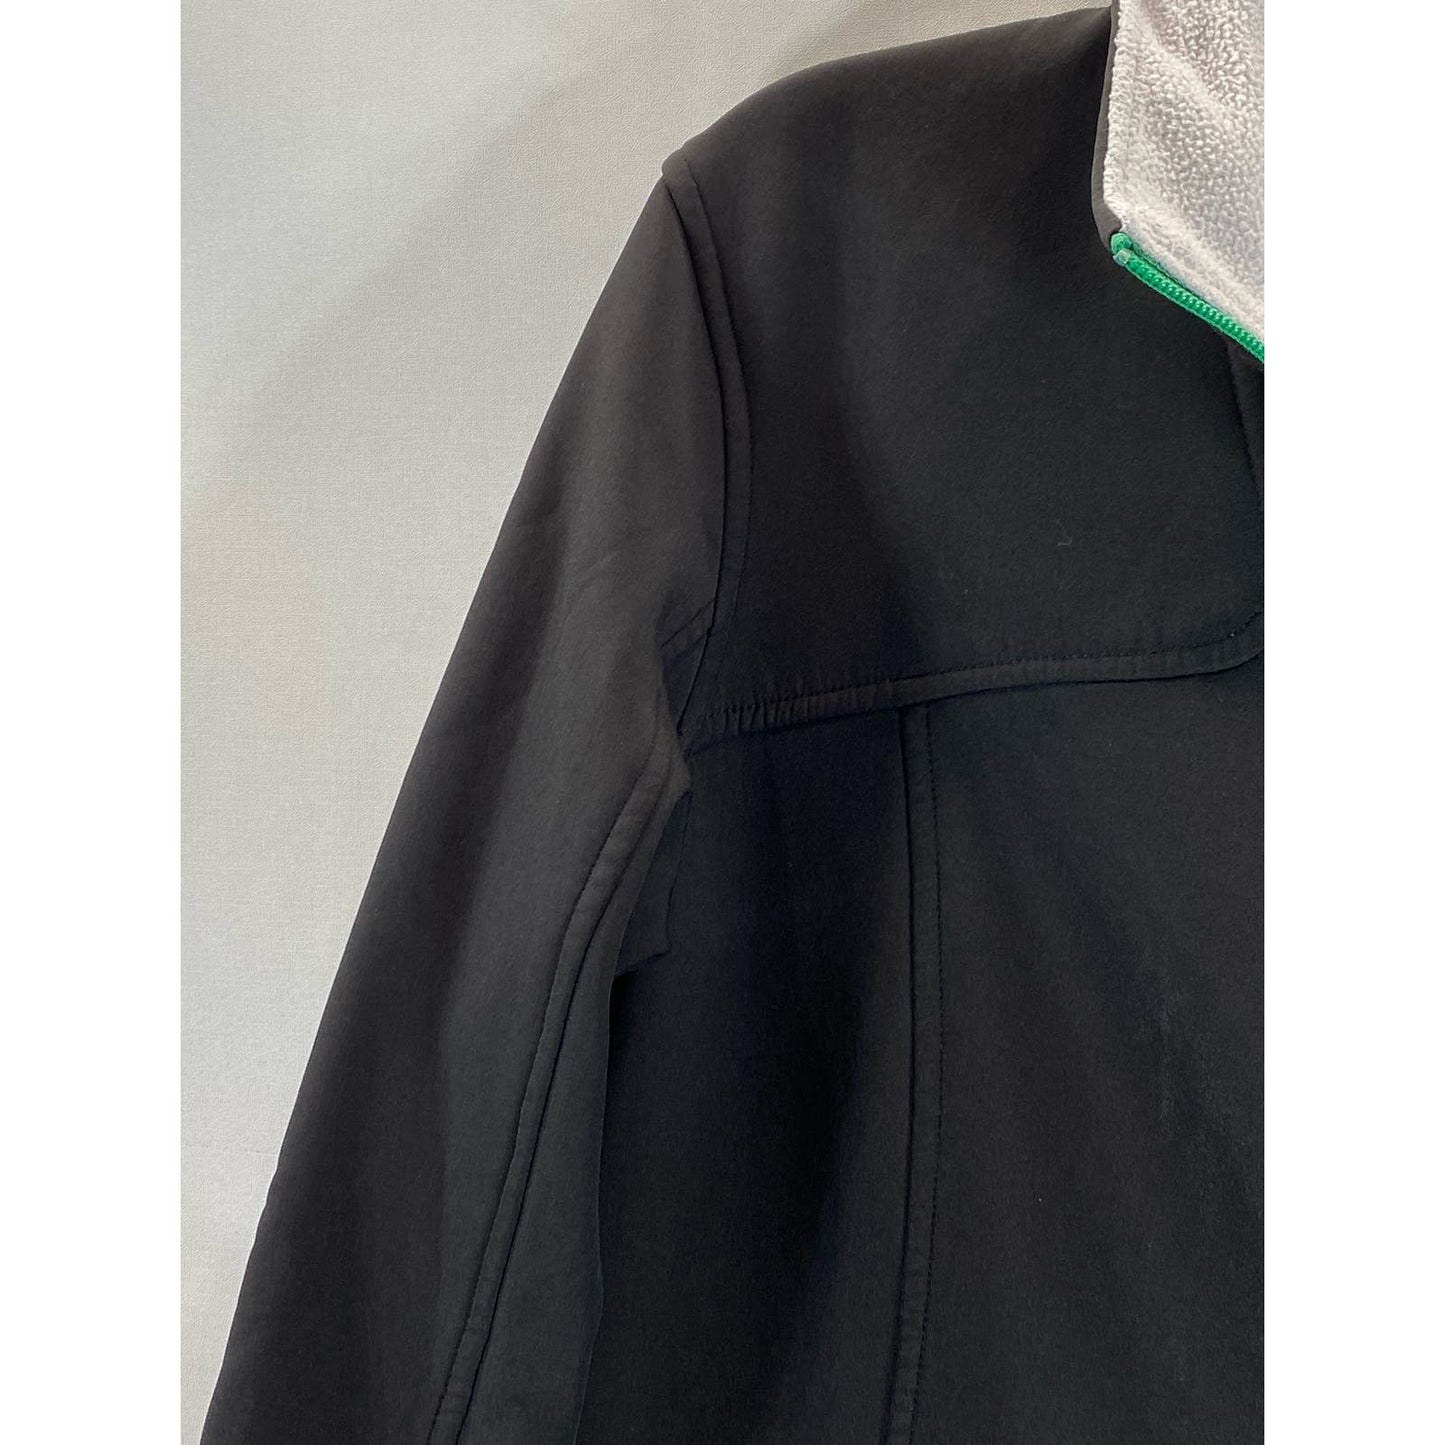 EDDIE BAUER Women's Black/Green Trim Softshell Stand Collar Zip-Up Jacket SZ L